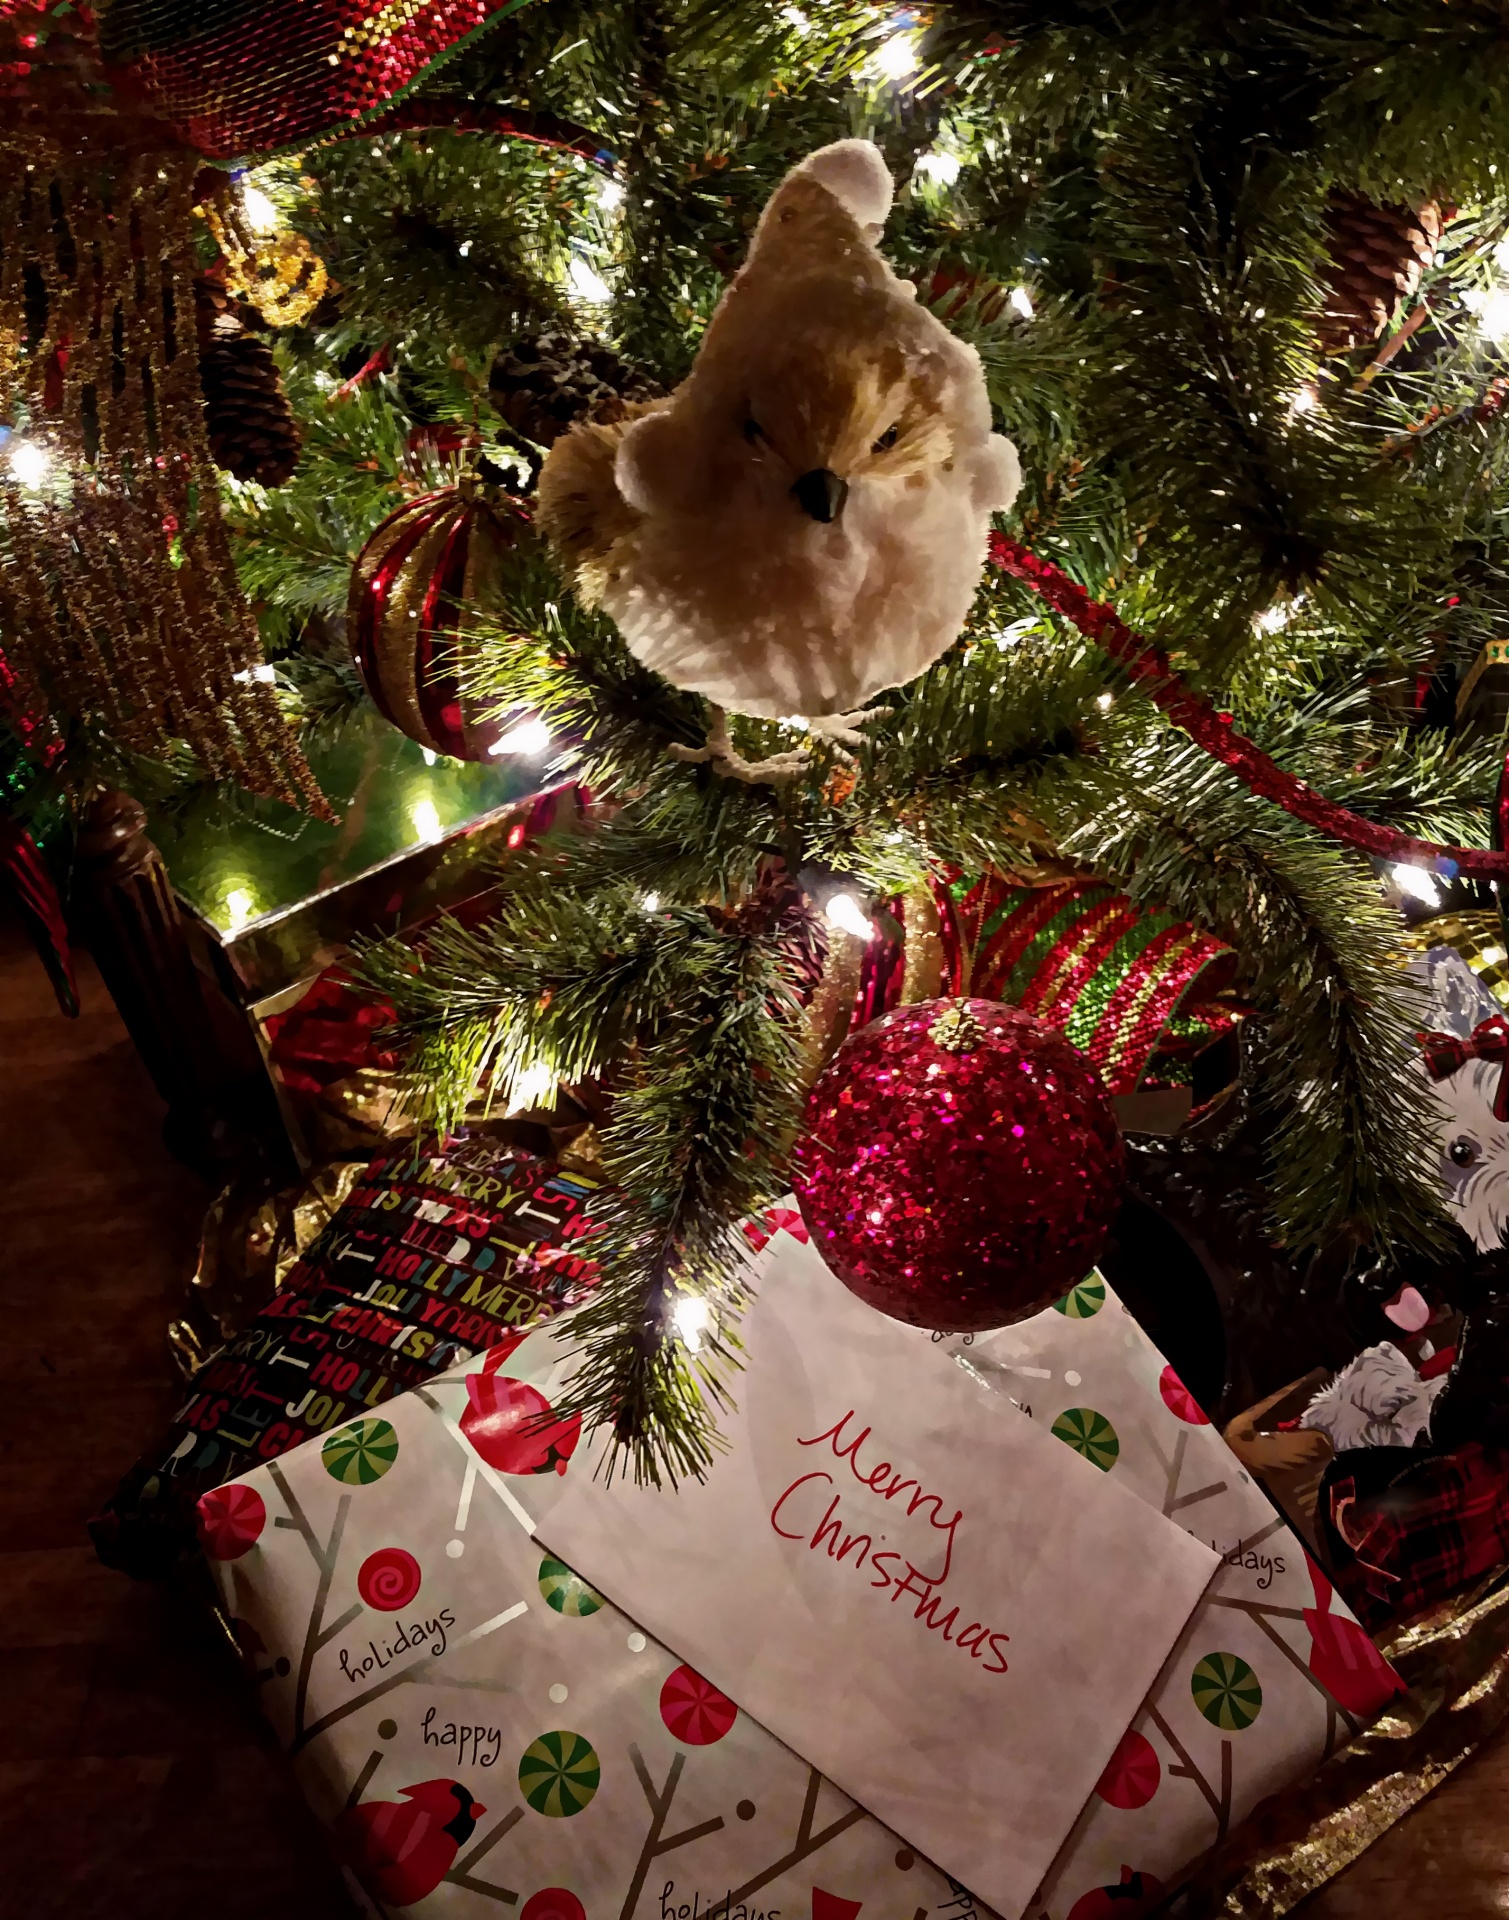 Presente sotto l'albero di Natale